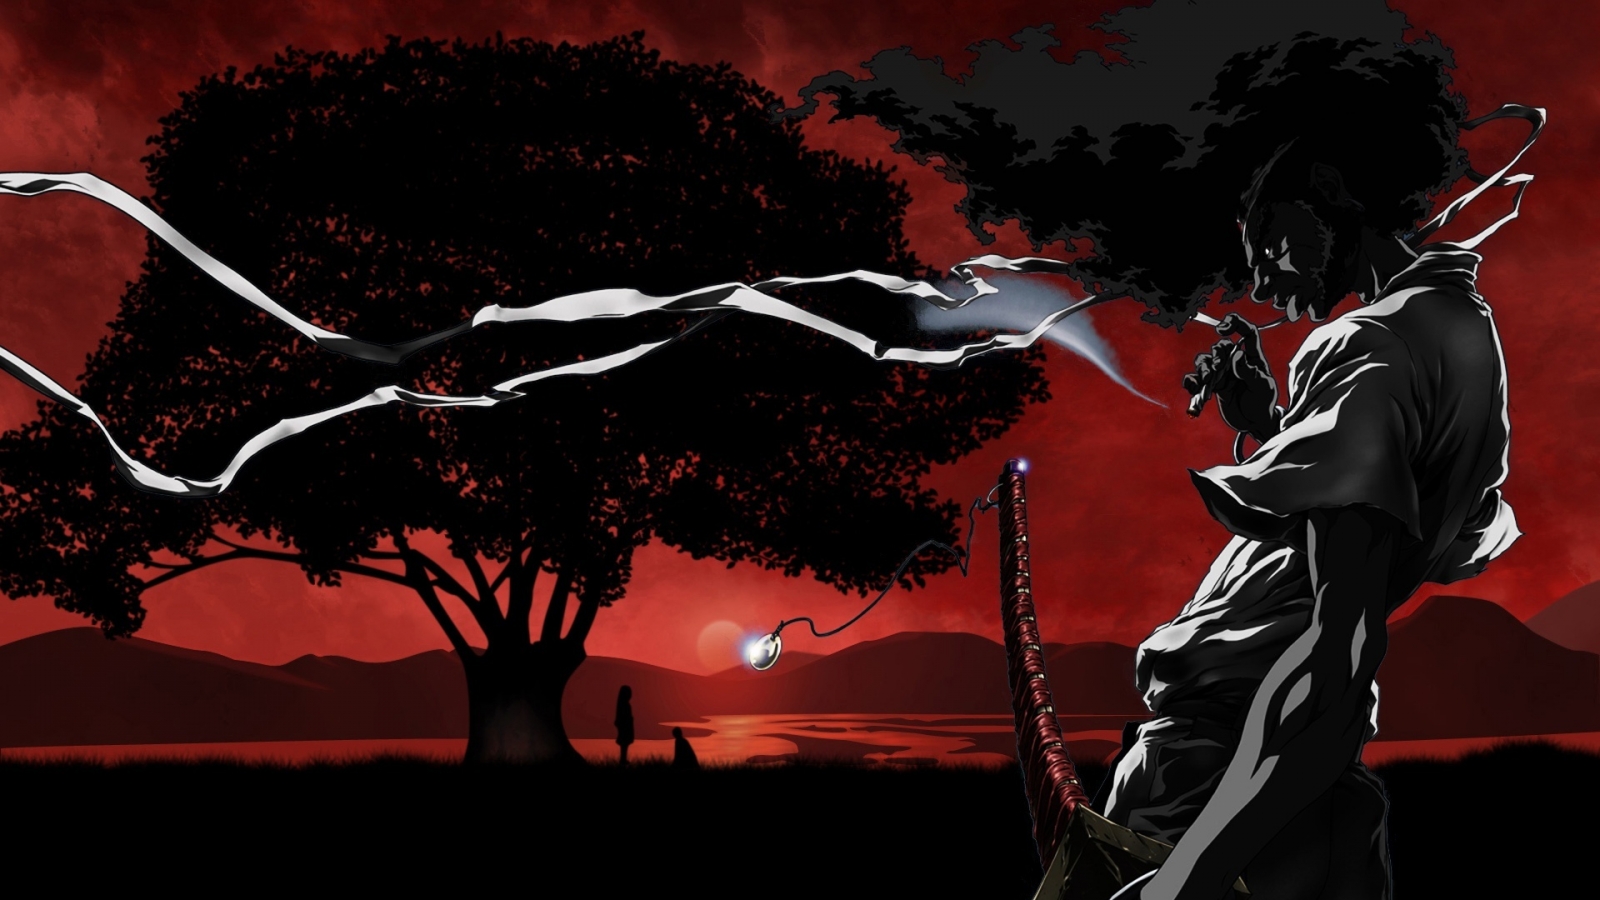 Sundown Afro Samurai for 1600 x 900 HDTV resolution